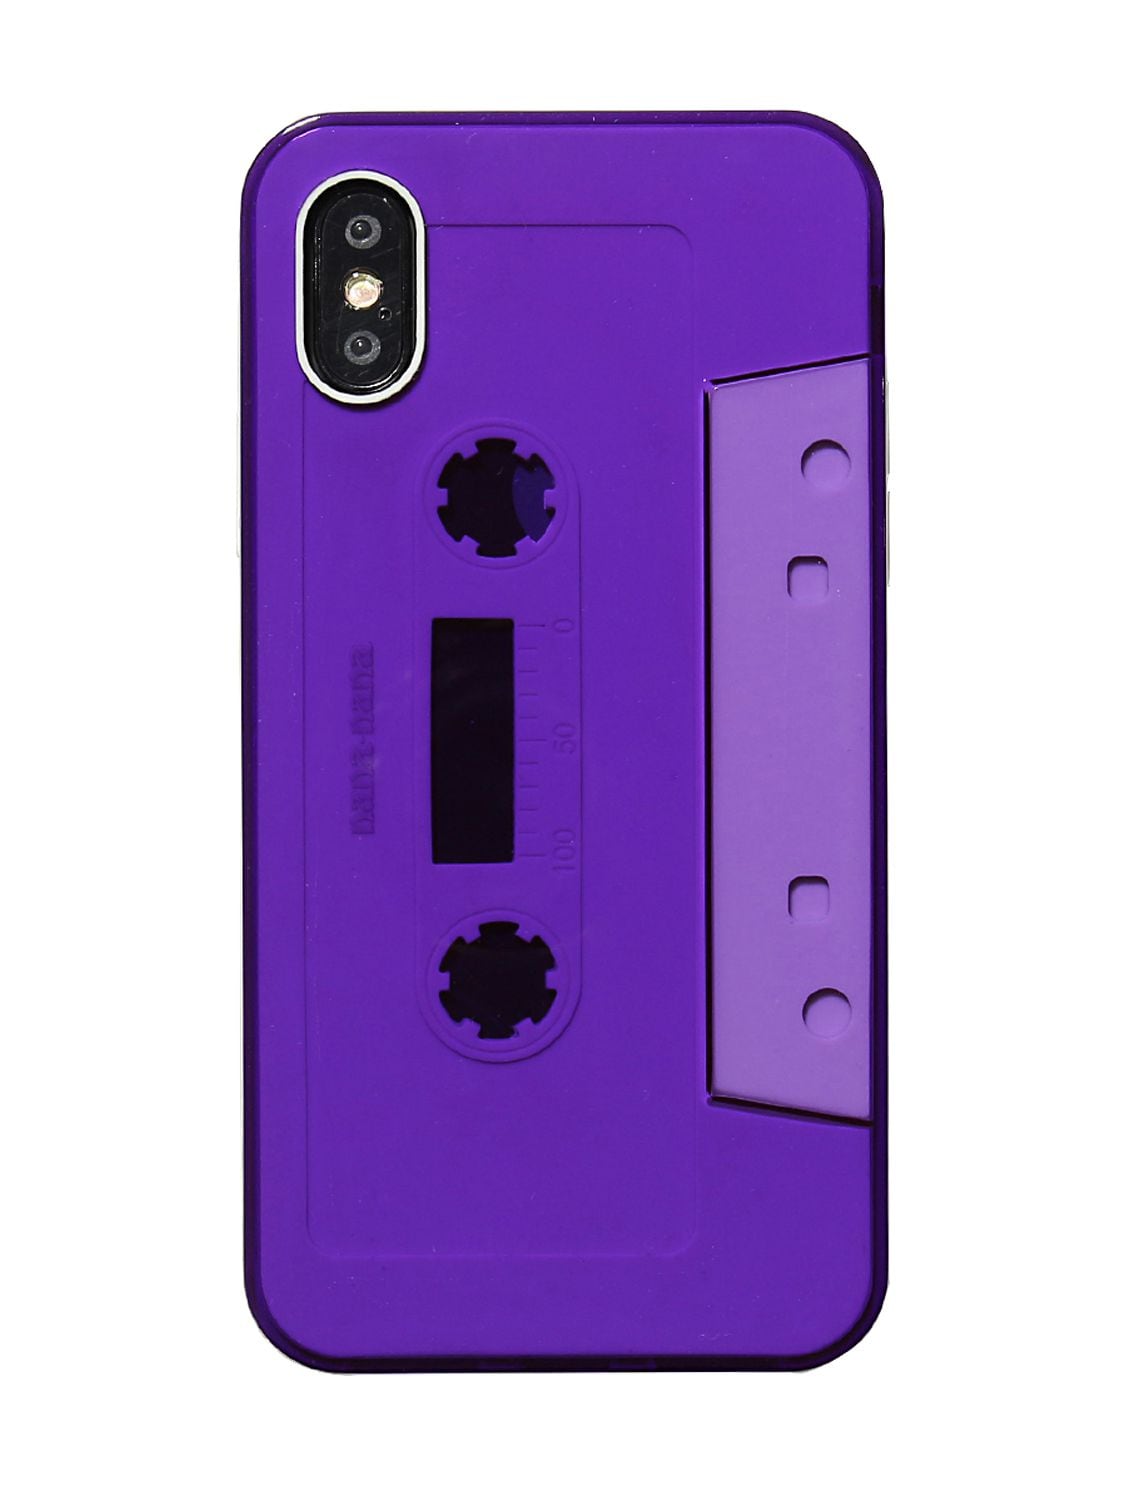 Nana-nana Not A Cassette Tape Iphone X/xs Case In Clear,purple